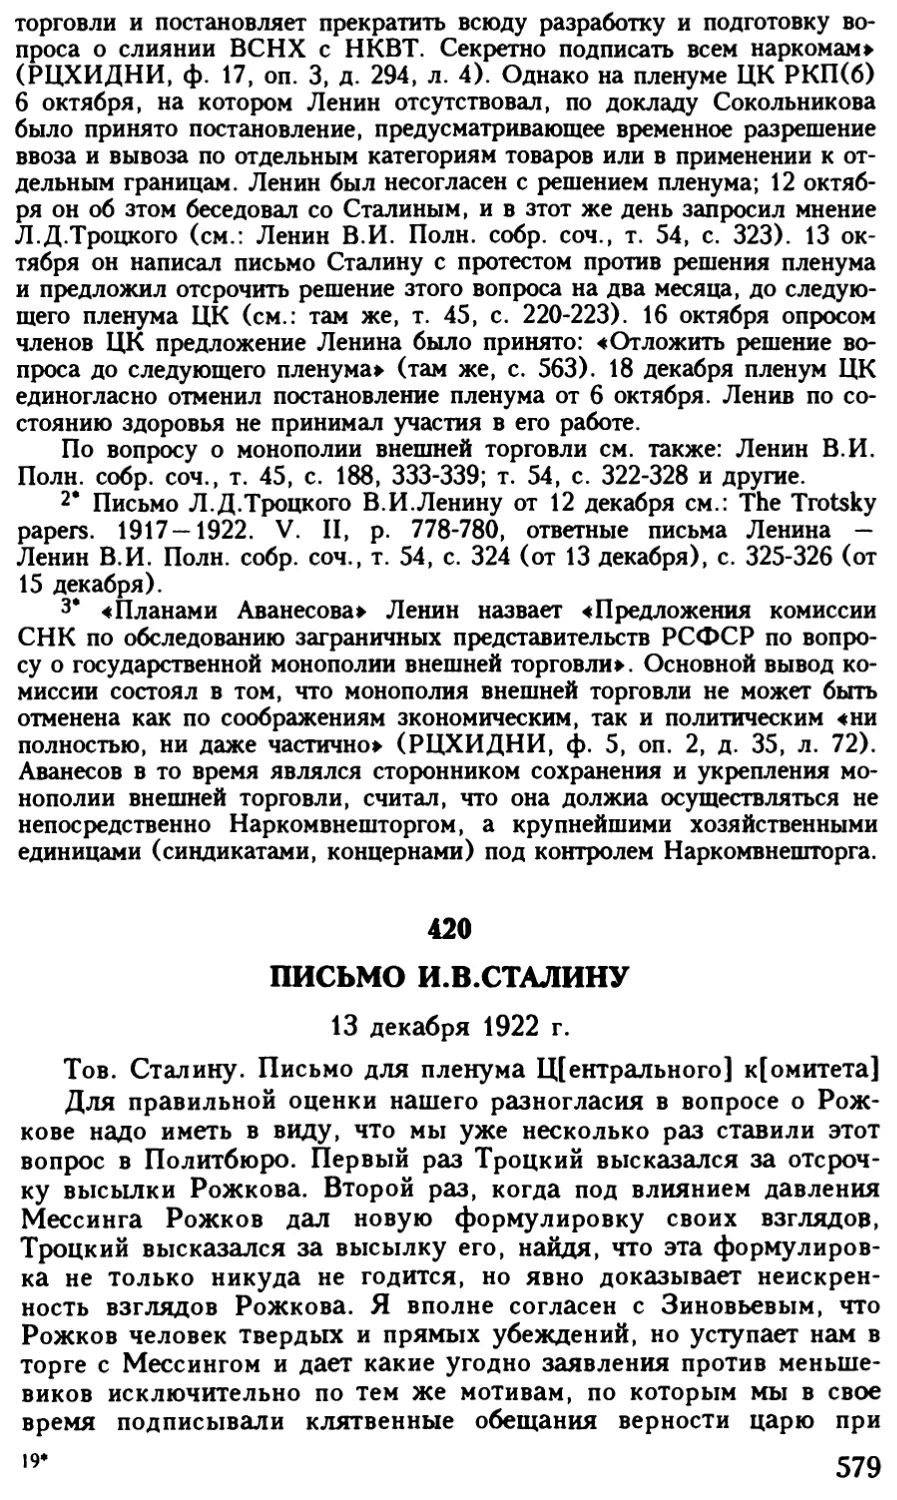 420. Письмо И.В.Сталину 13 декабря 1922 г